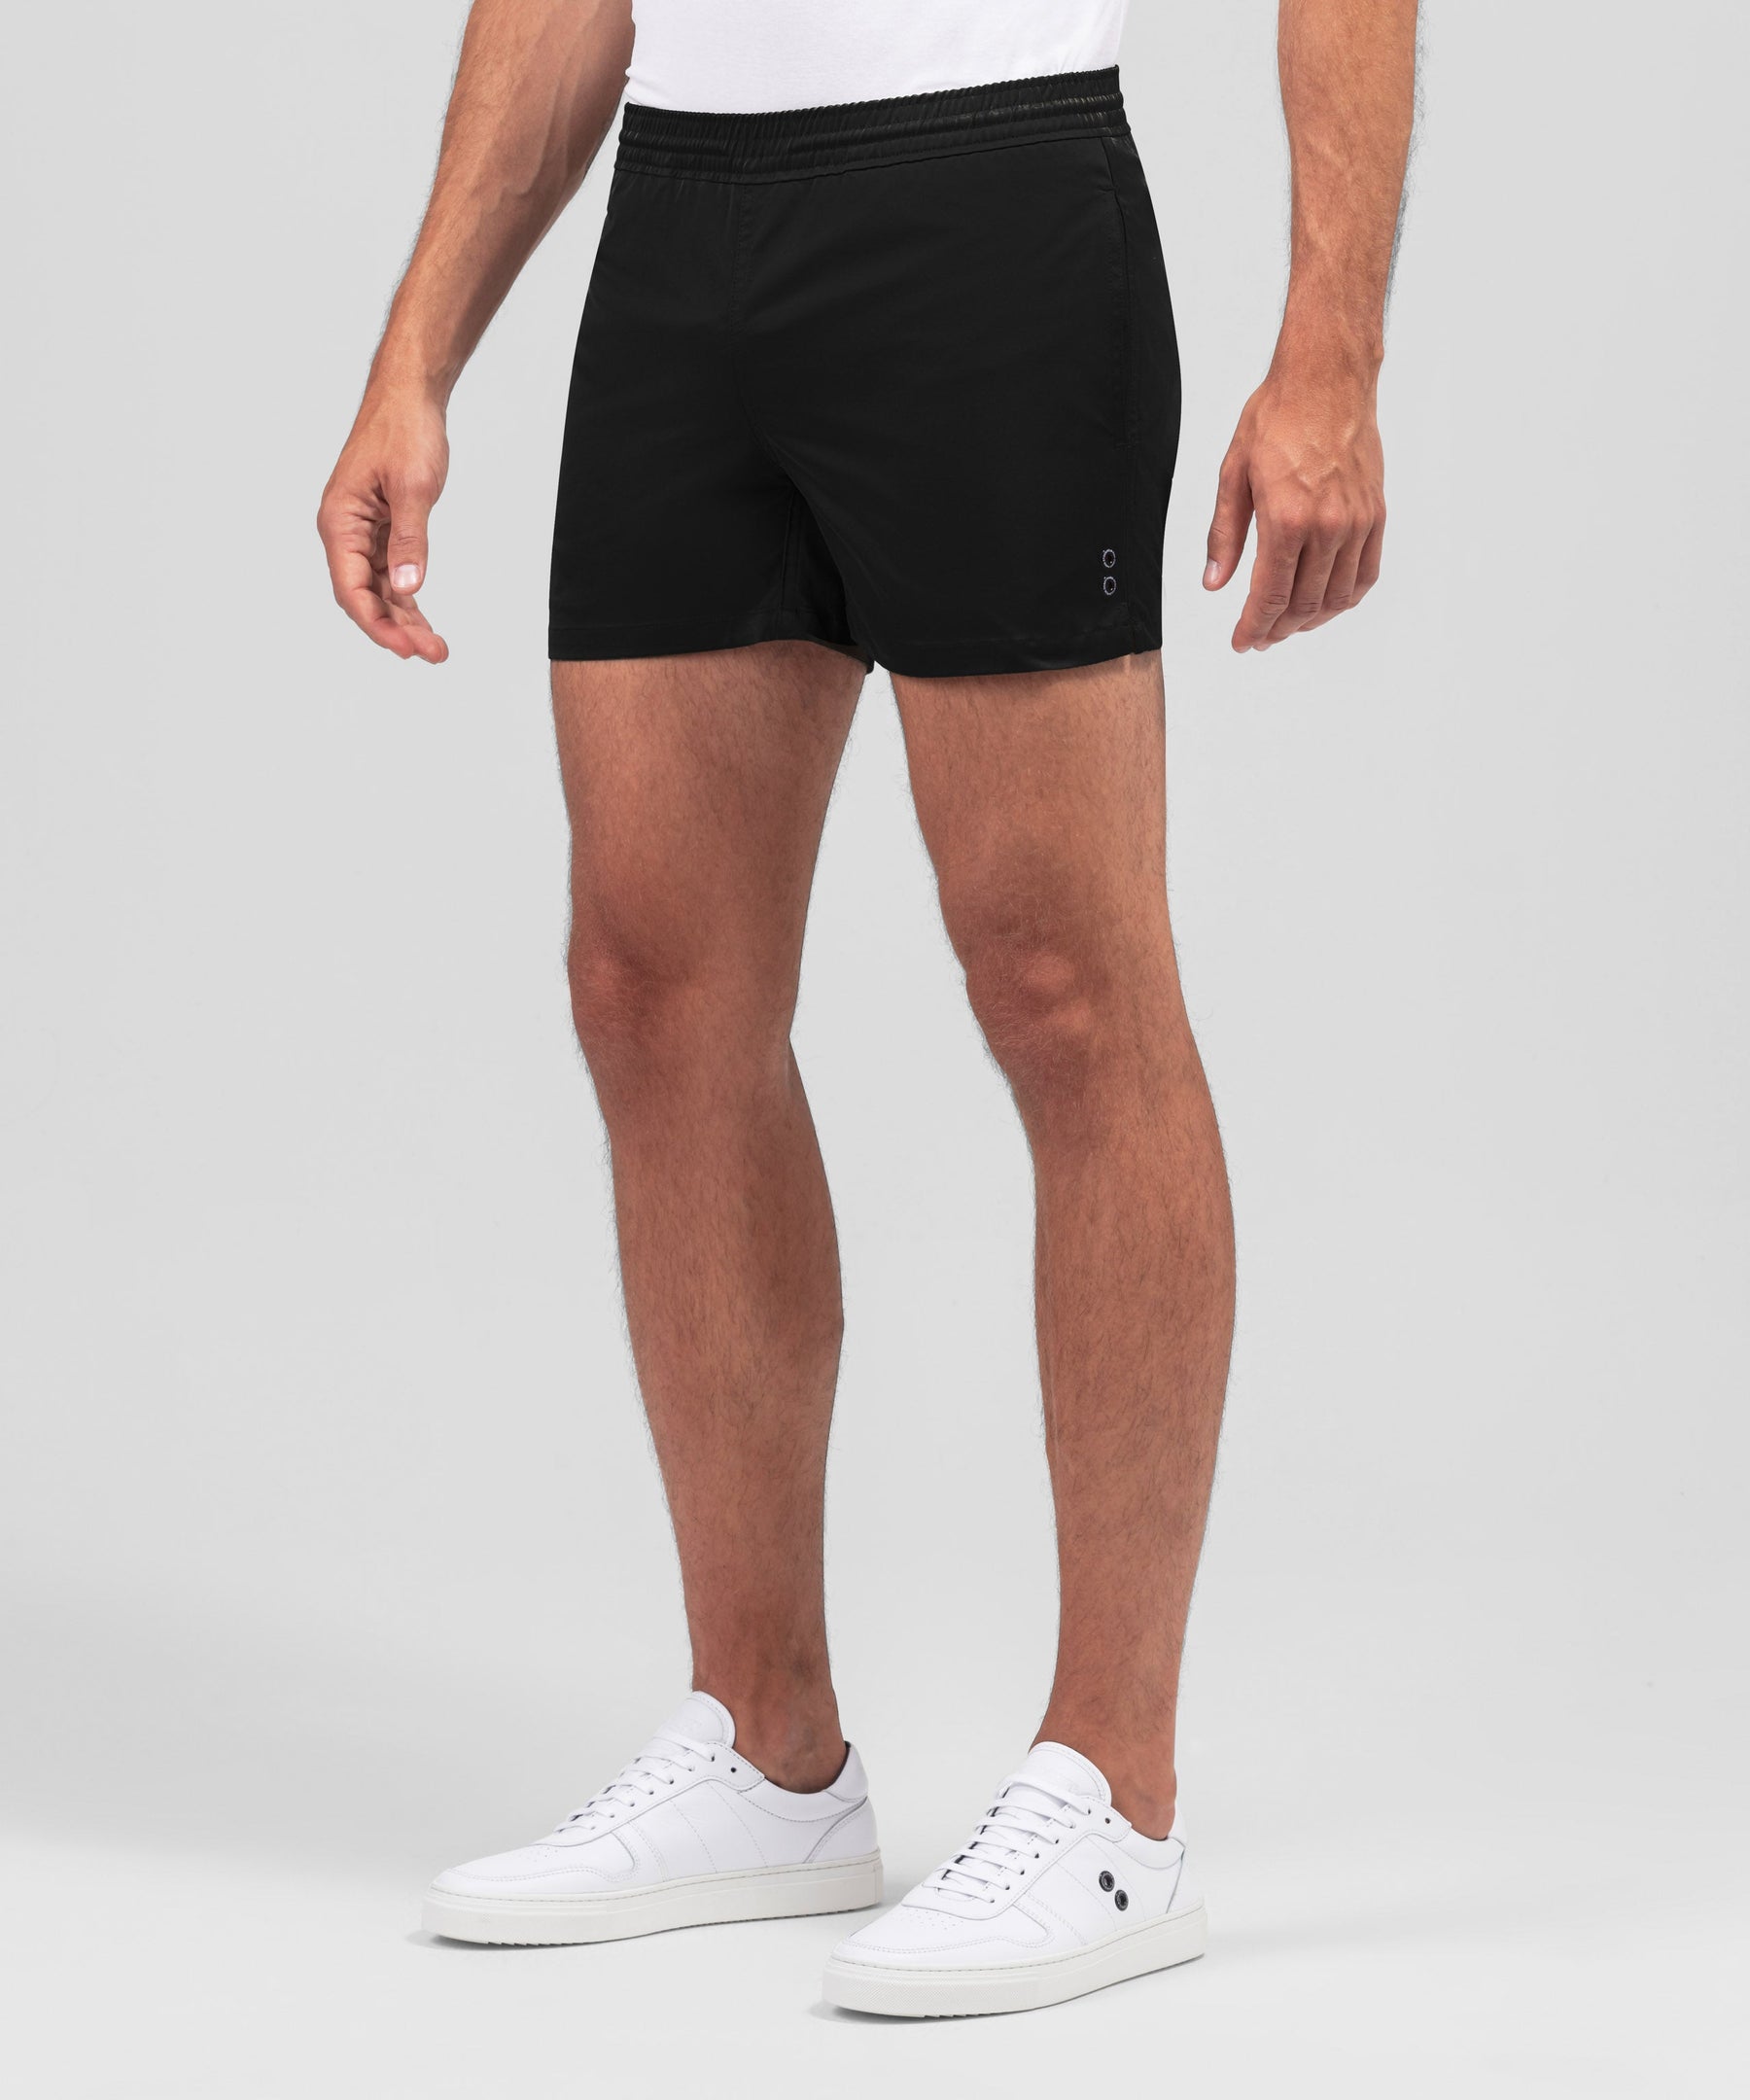 RD Exerciser Shorts: Black